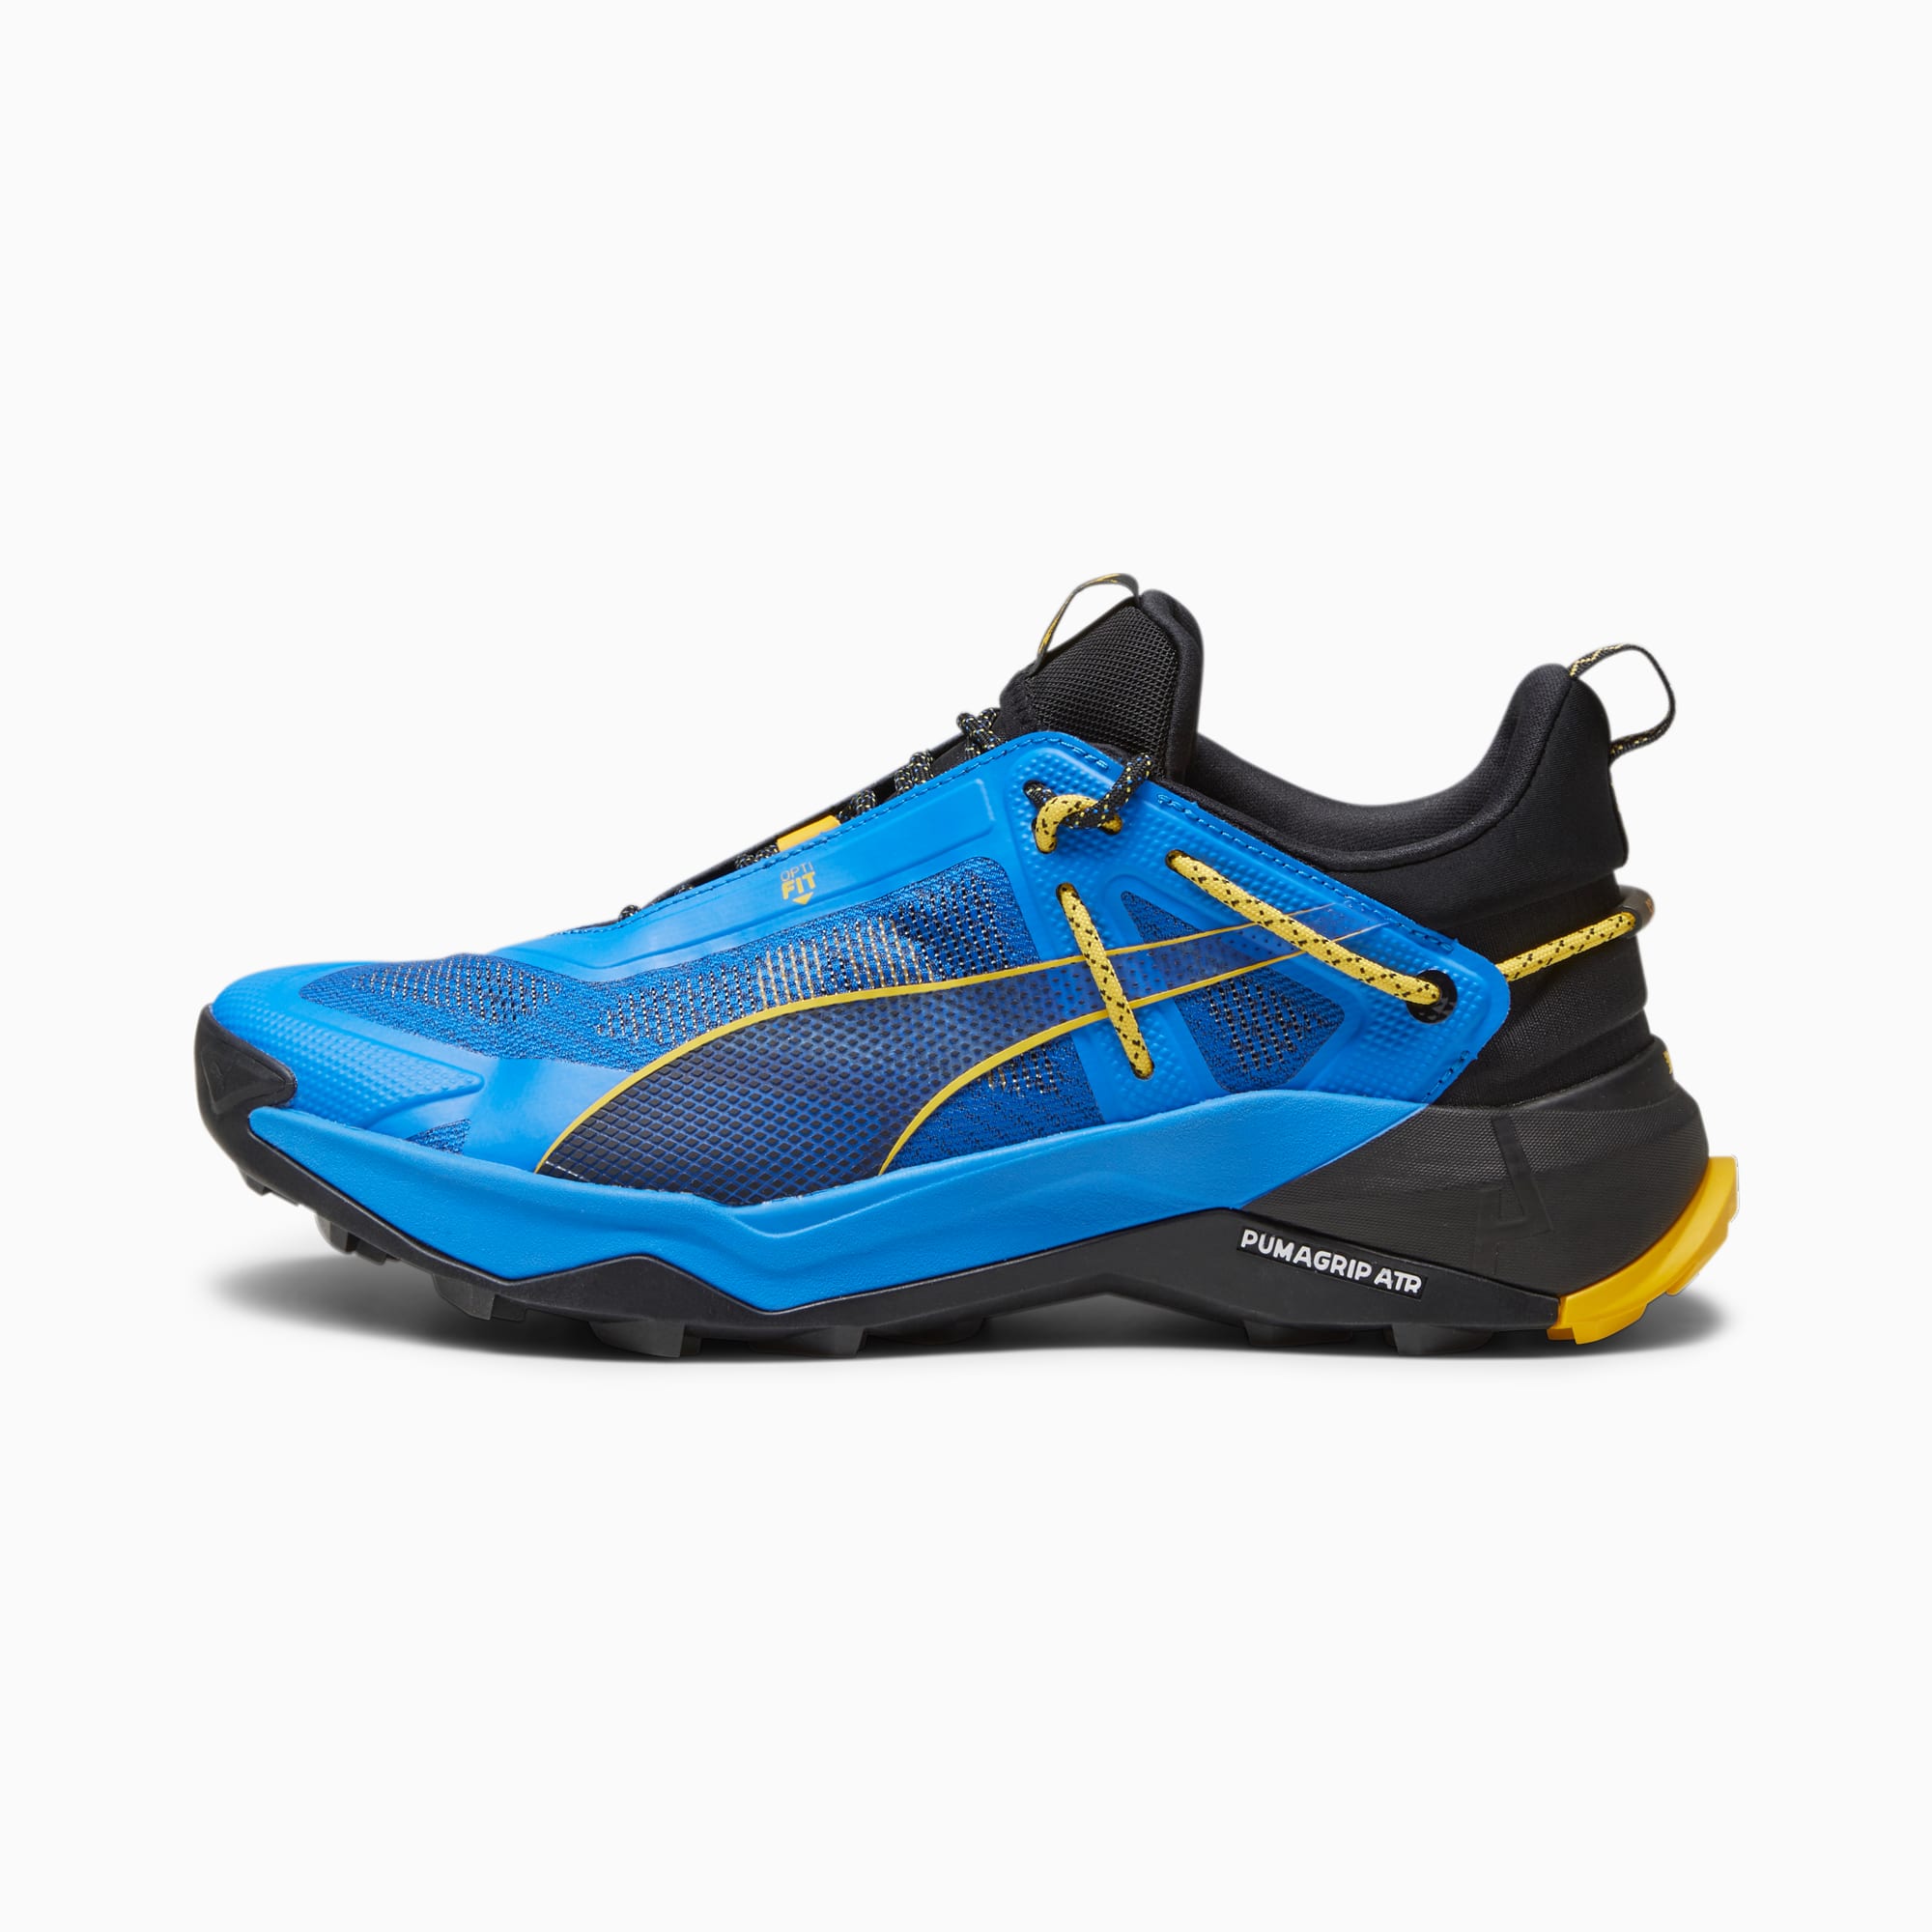 puma chaussures de randonnée nitro™ homme, bleu/jaune